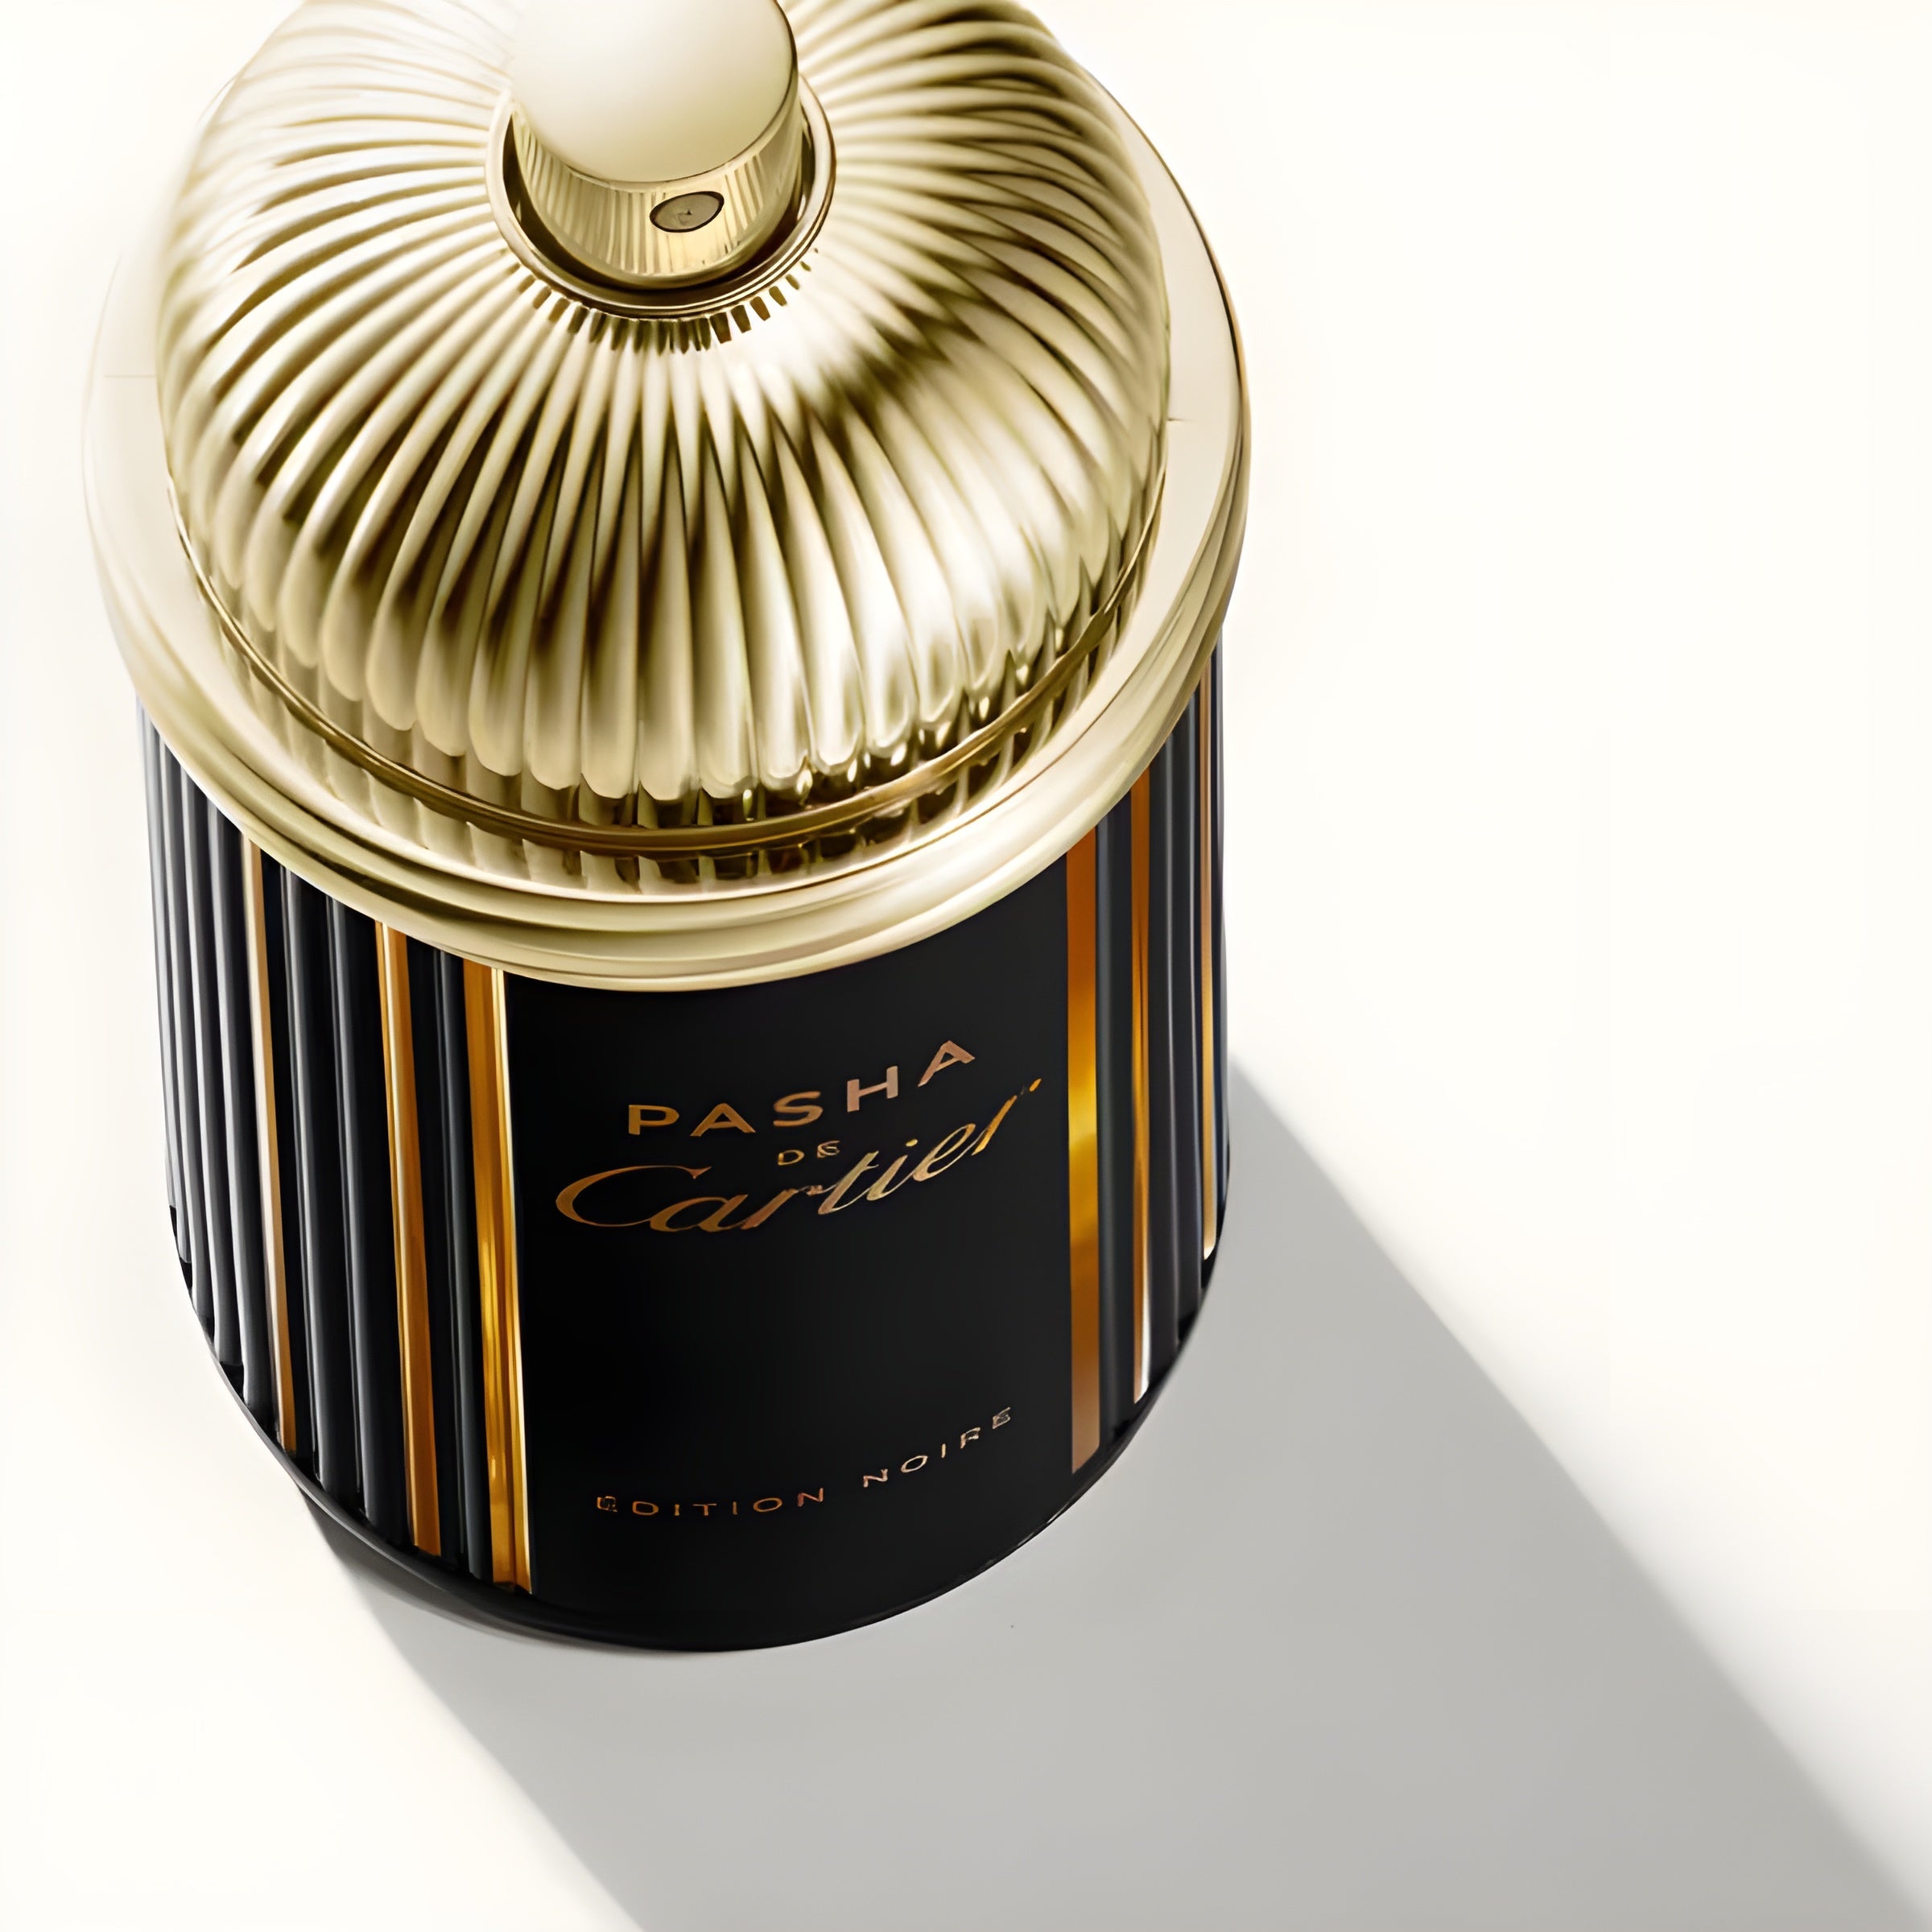 Cartier Pasha De Cartier Edition Noire Limited Edition EDT | My Perfume Shop Australia